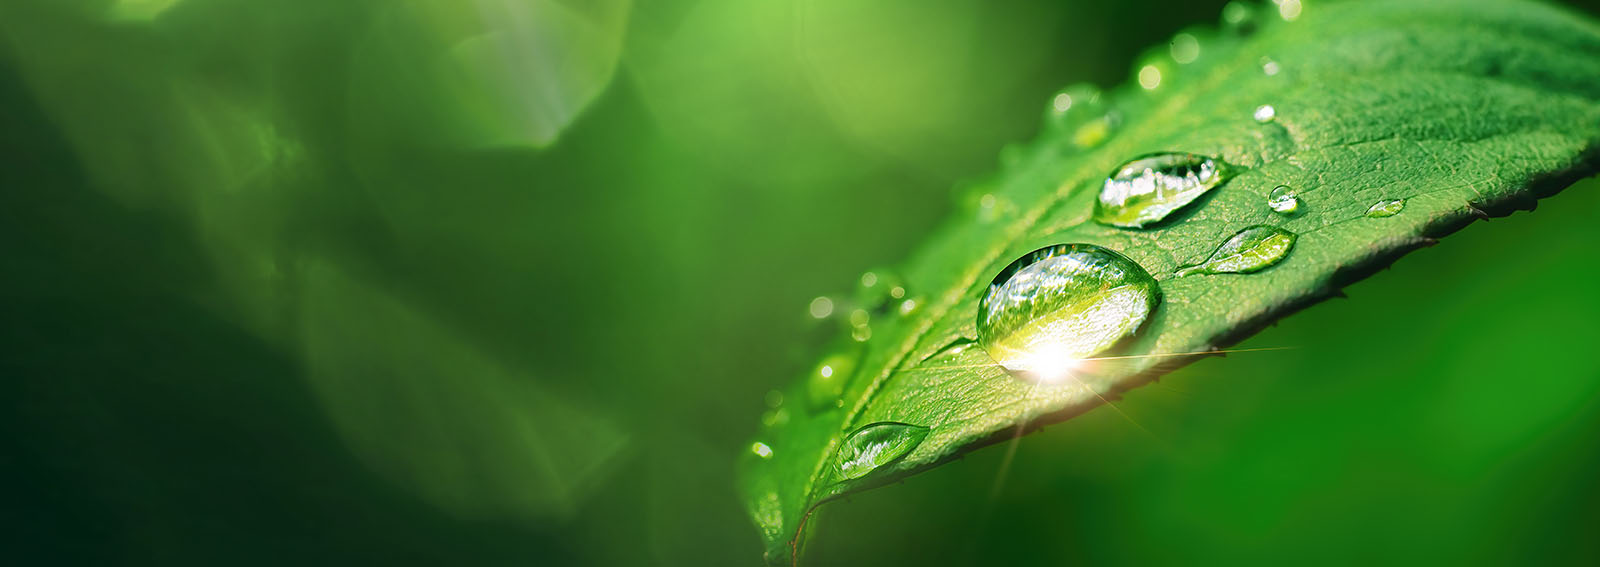 morninig dew on a leaf